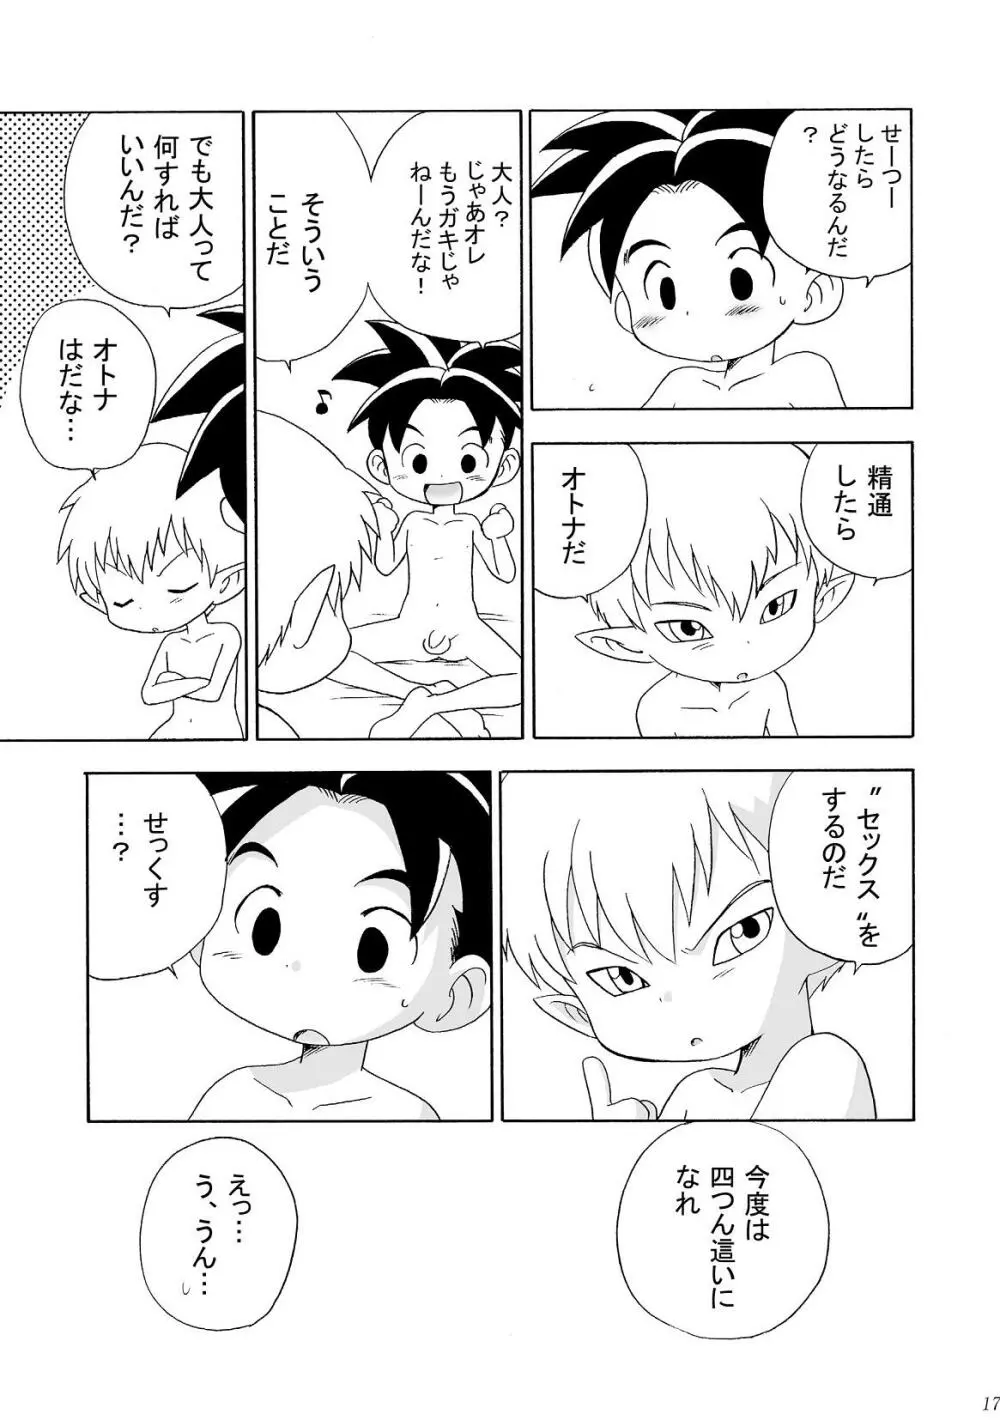 Yumemirukoro Sugitemo - One Page.17